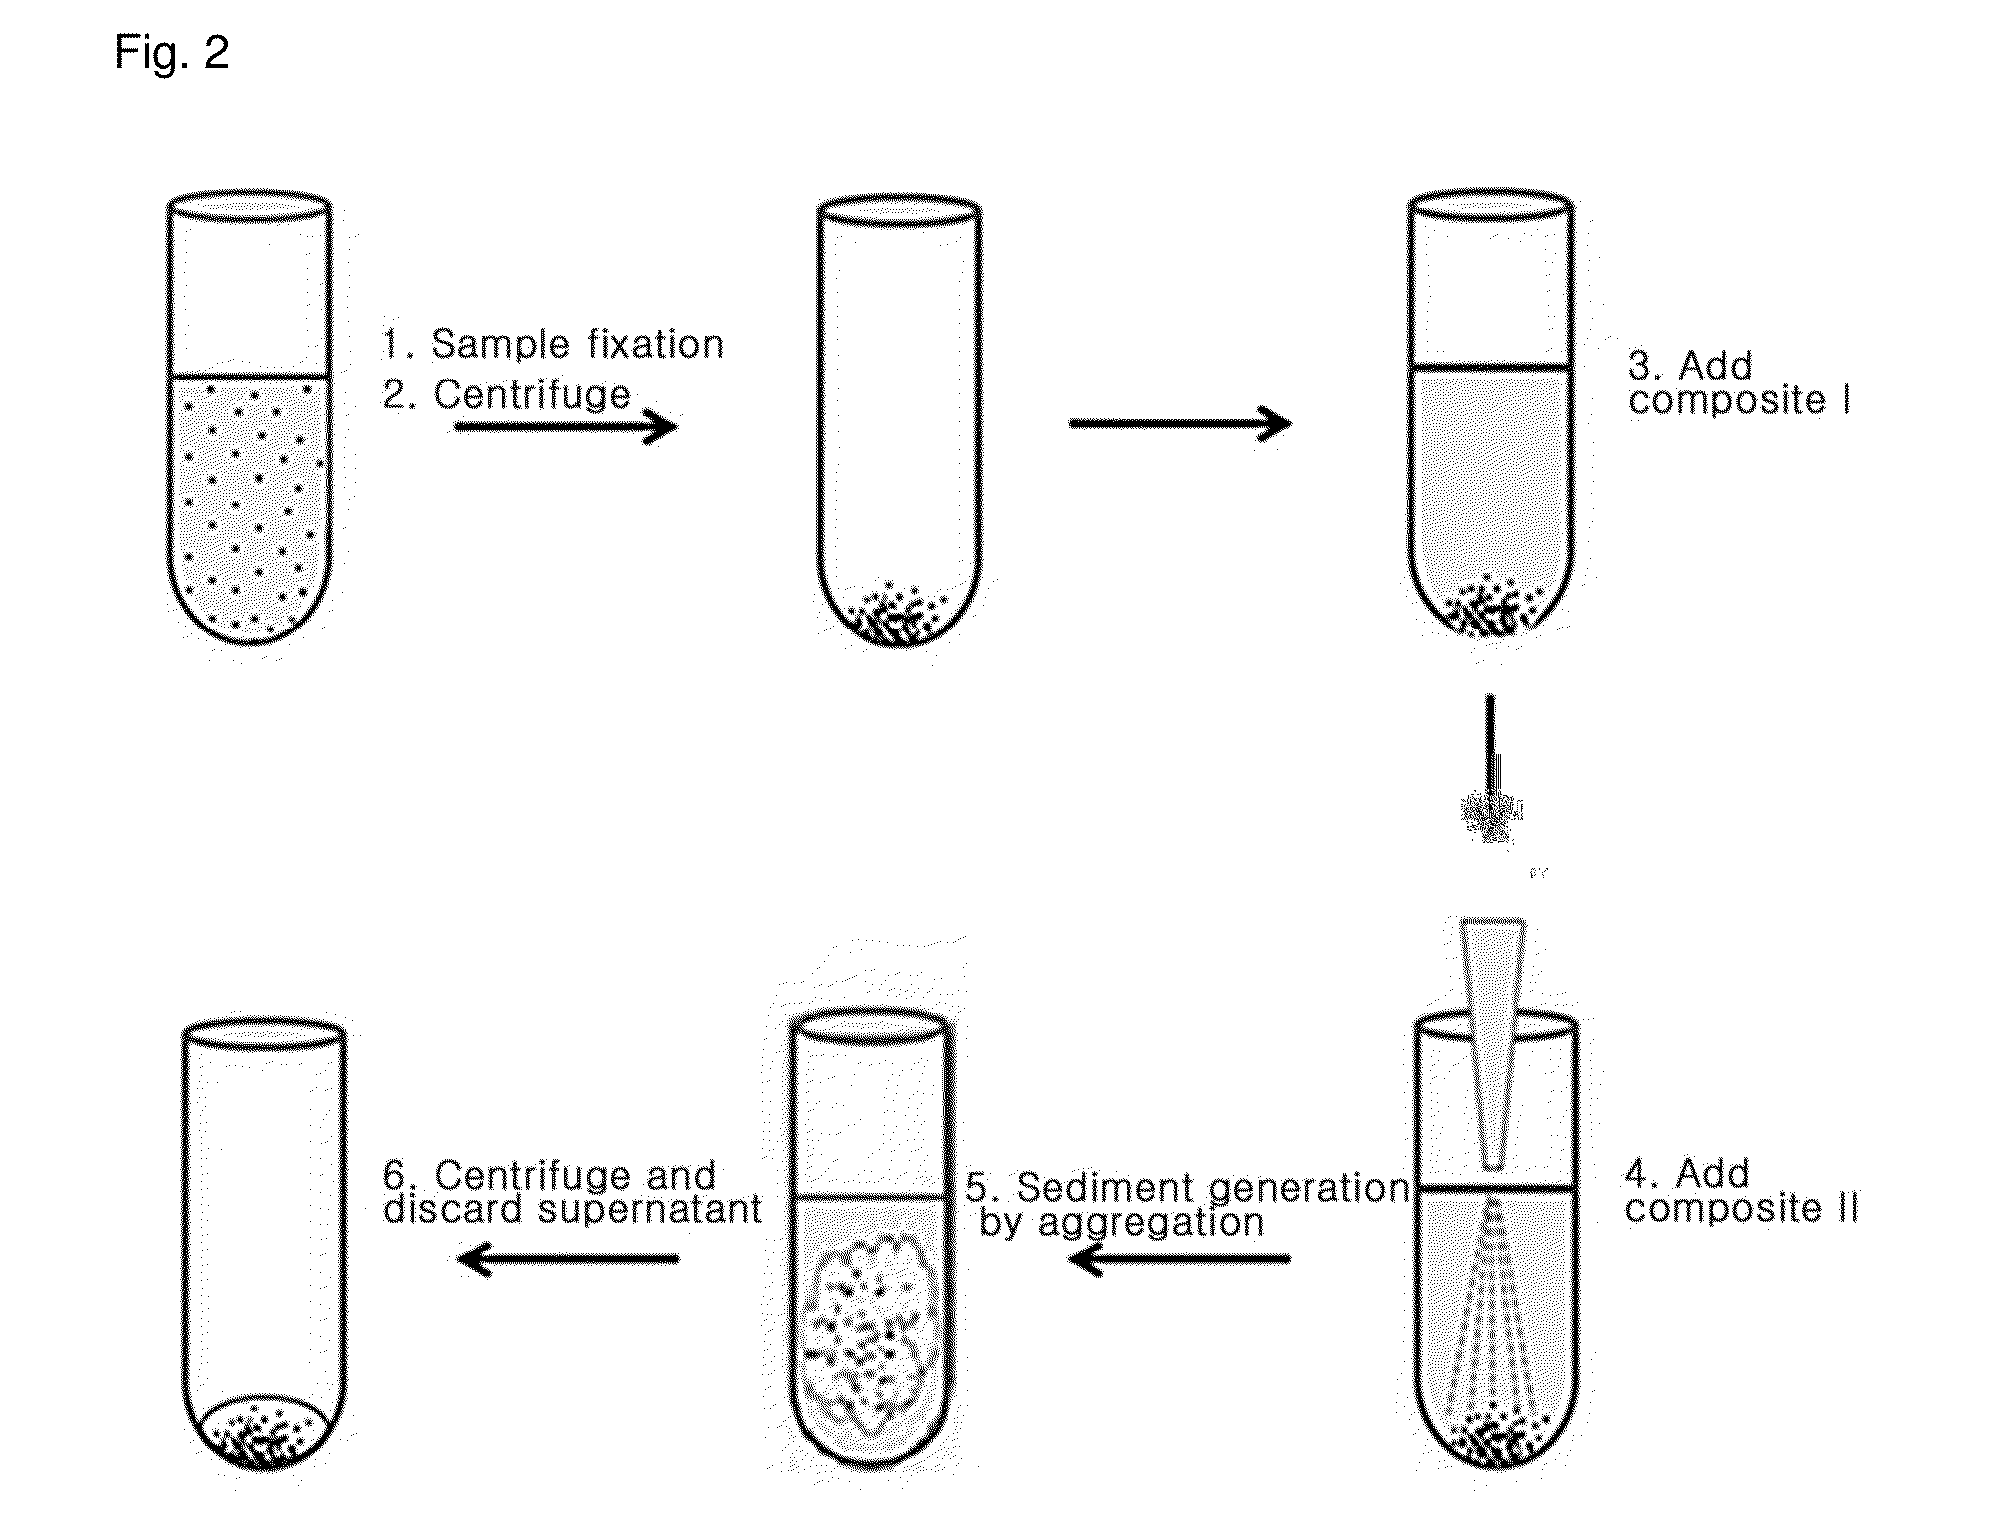 Composition for aggregating biological sample